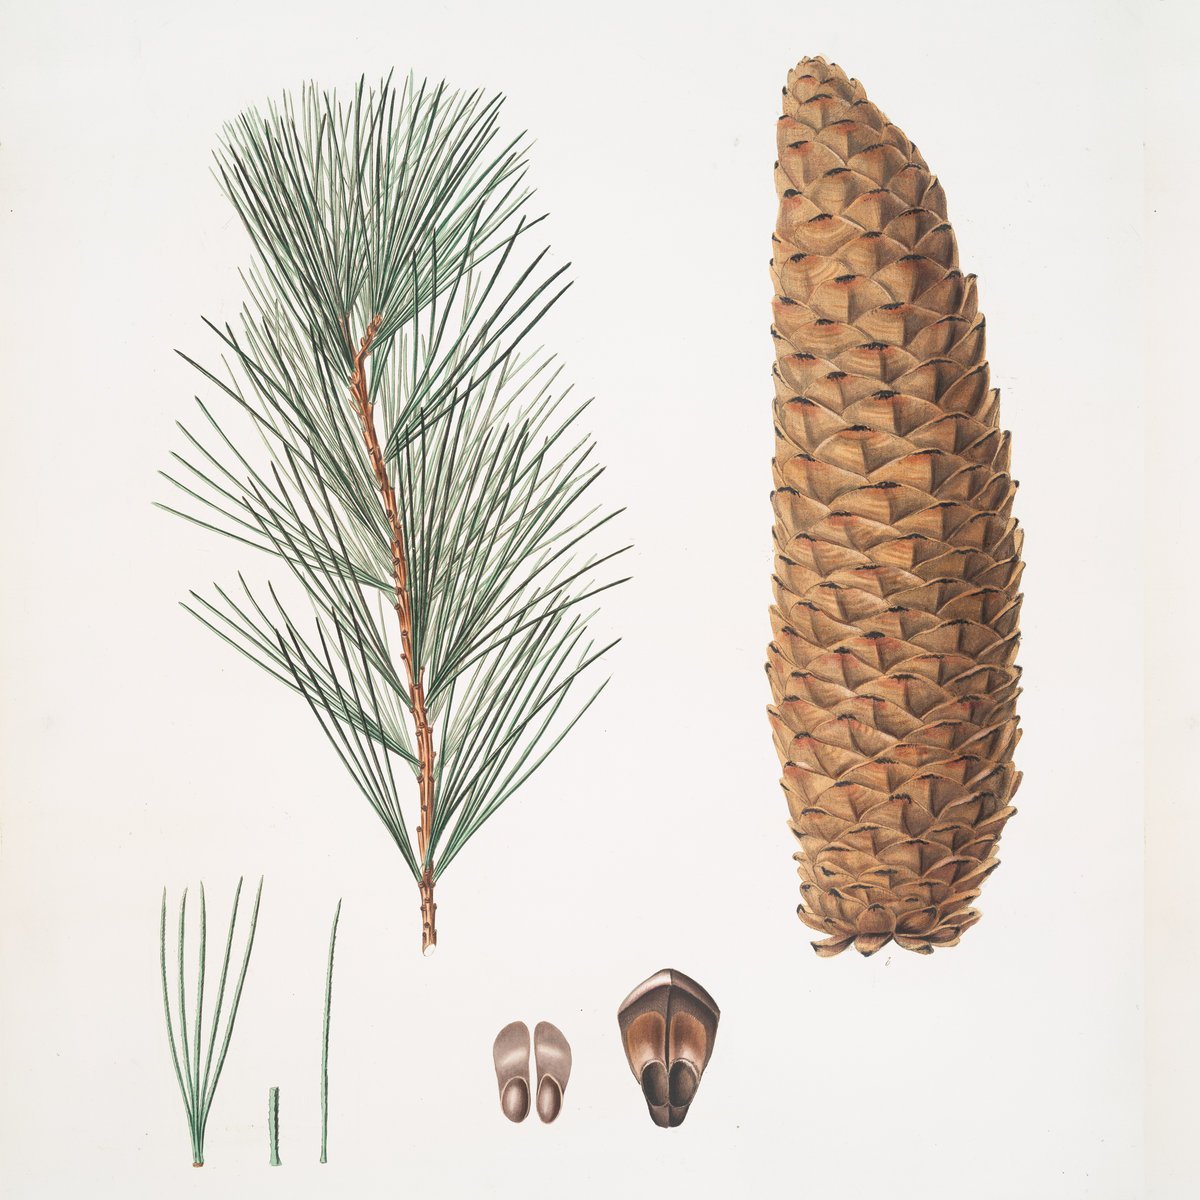 Шишки и семена хвойных. Сосны Pinus lambertiana. Pinus lambertiana Cone. Pinus lambertiana шишка. Сосна Ламберта (Pinus lambertiana).